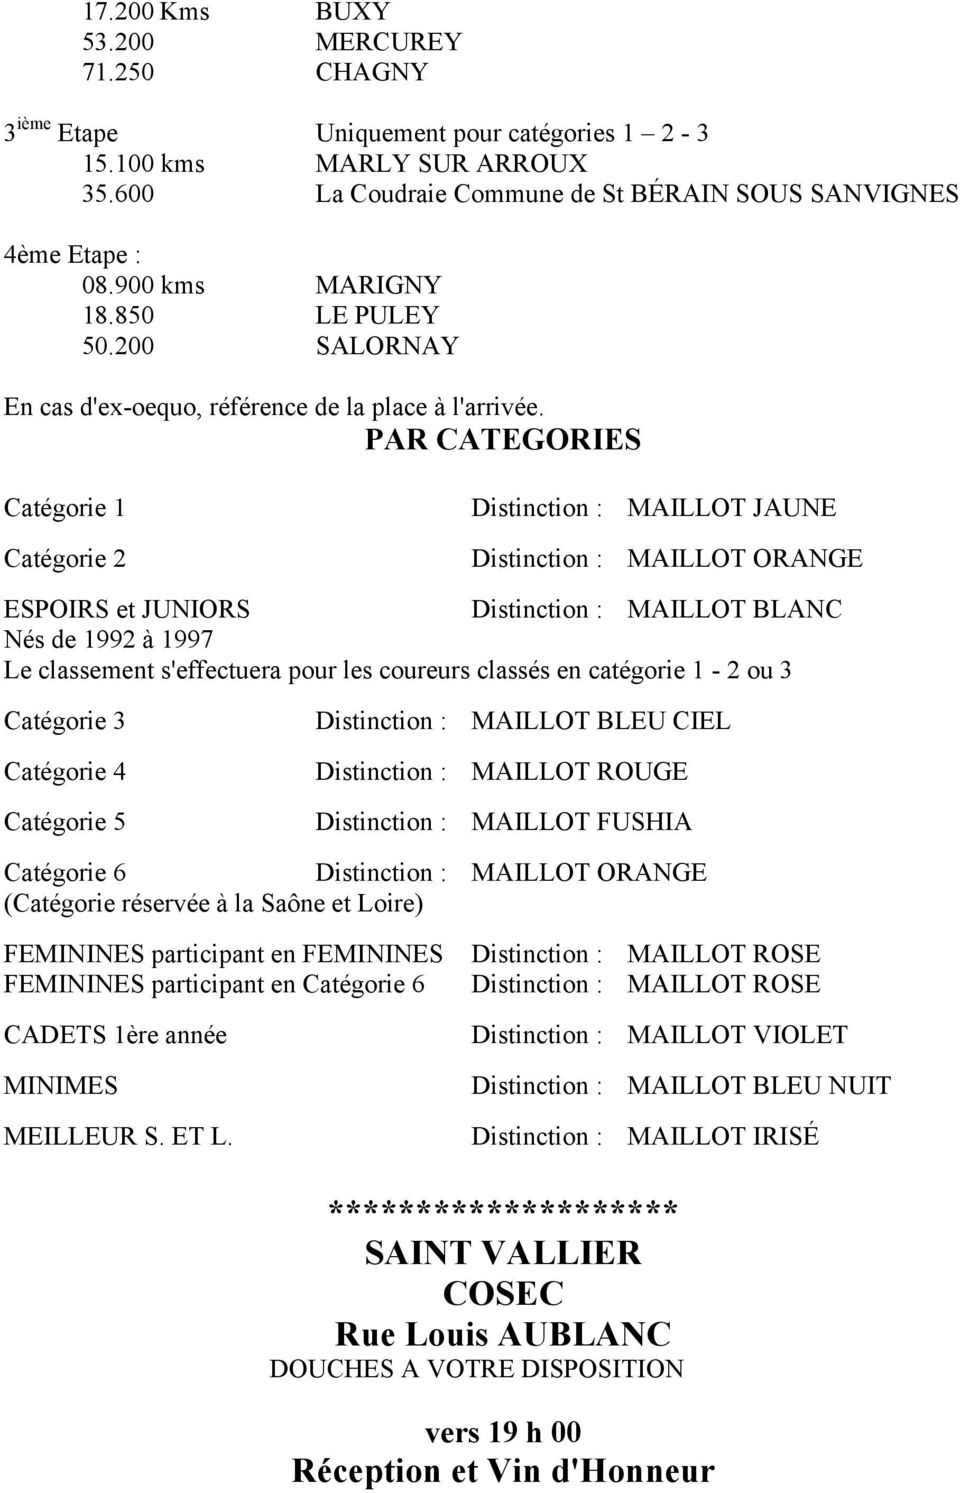 PAR CATEGORIES Catégorie 1 Catégorie 2 Distinction : MAILLOT JAUNE Distinction : MAILLOT ORANGE ESPOIRS et JUNIORS Distinction : MAILLOT BLANC Nés de 1992 à 1997 Le classement s'effectuera pour les